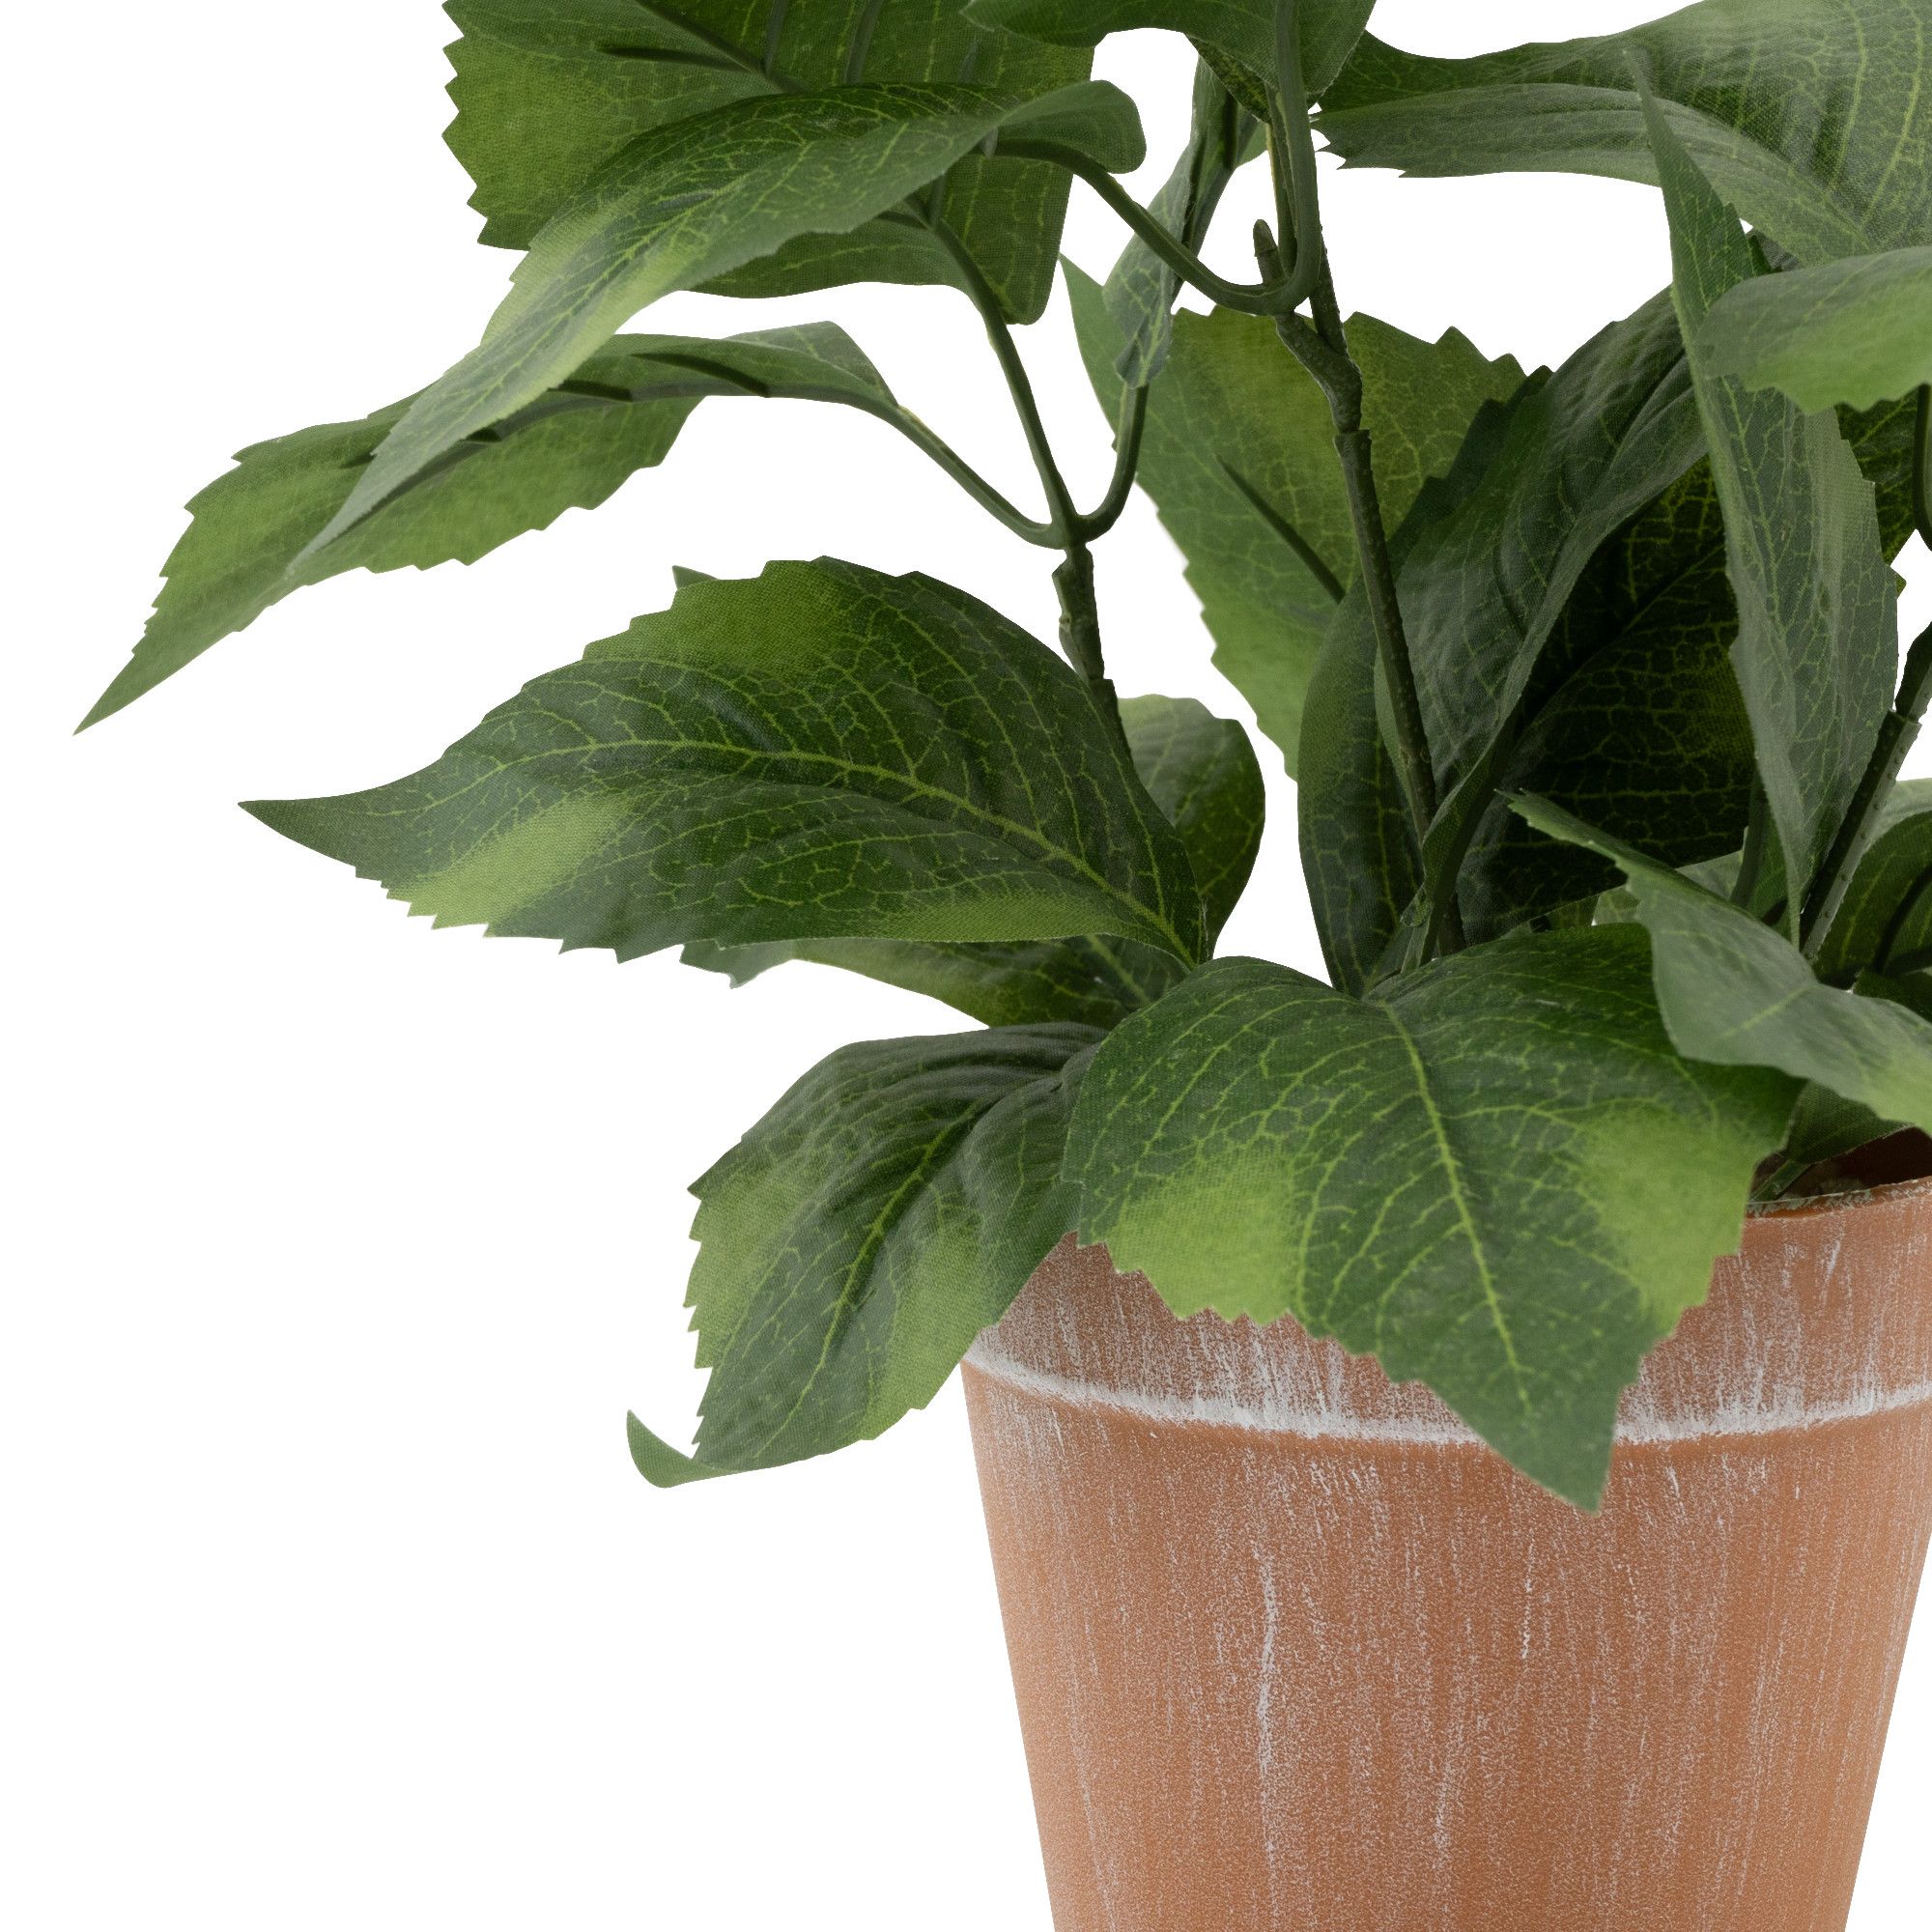 35cm White Hydrangea Artificial plant in Red Terracotta Pot